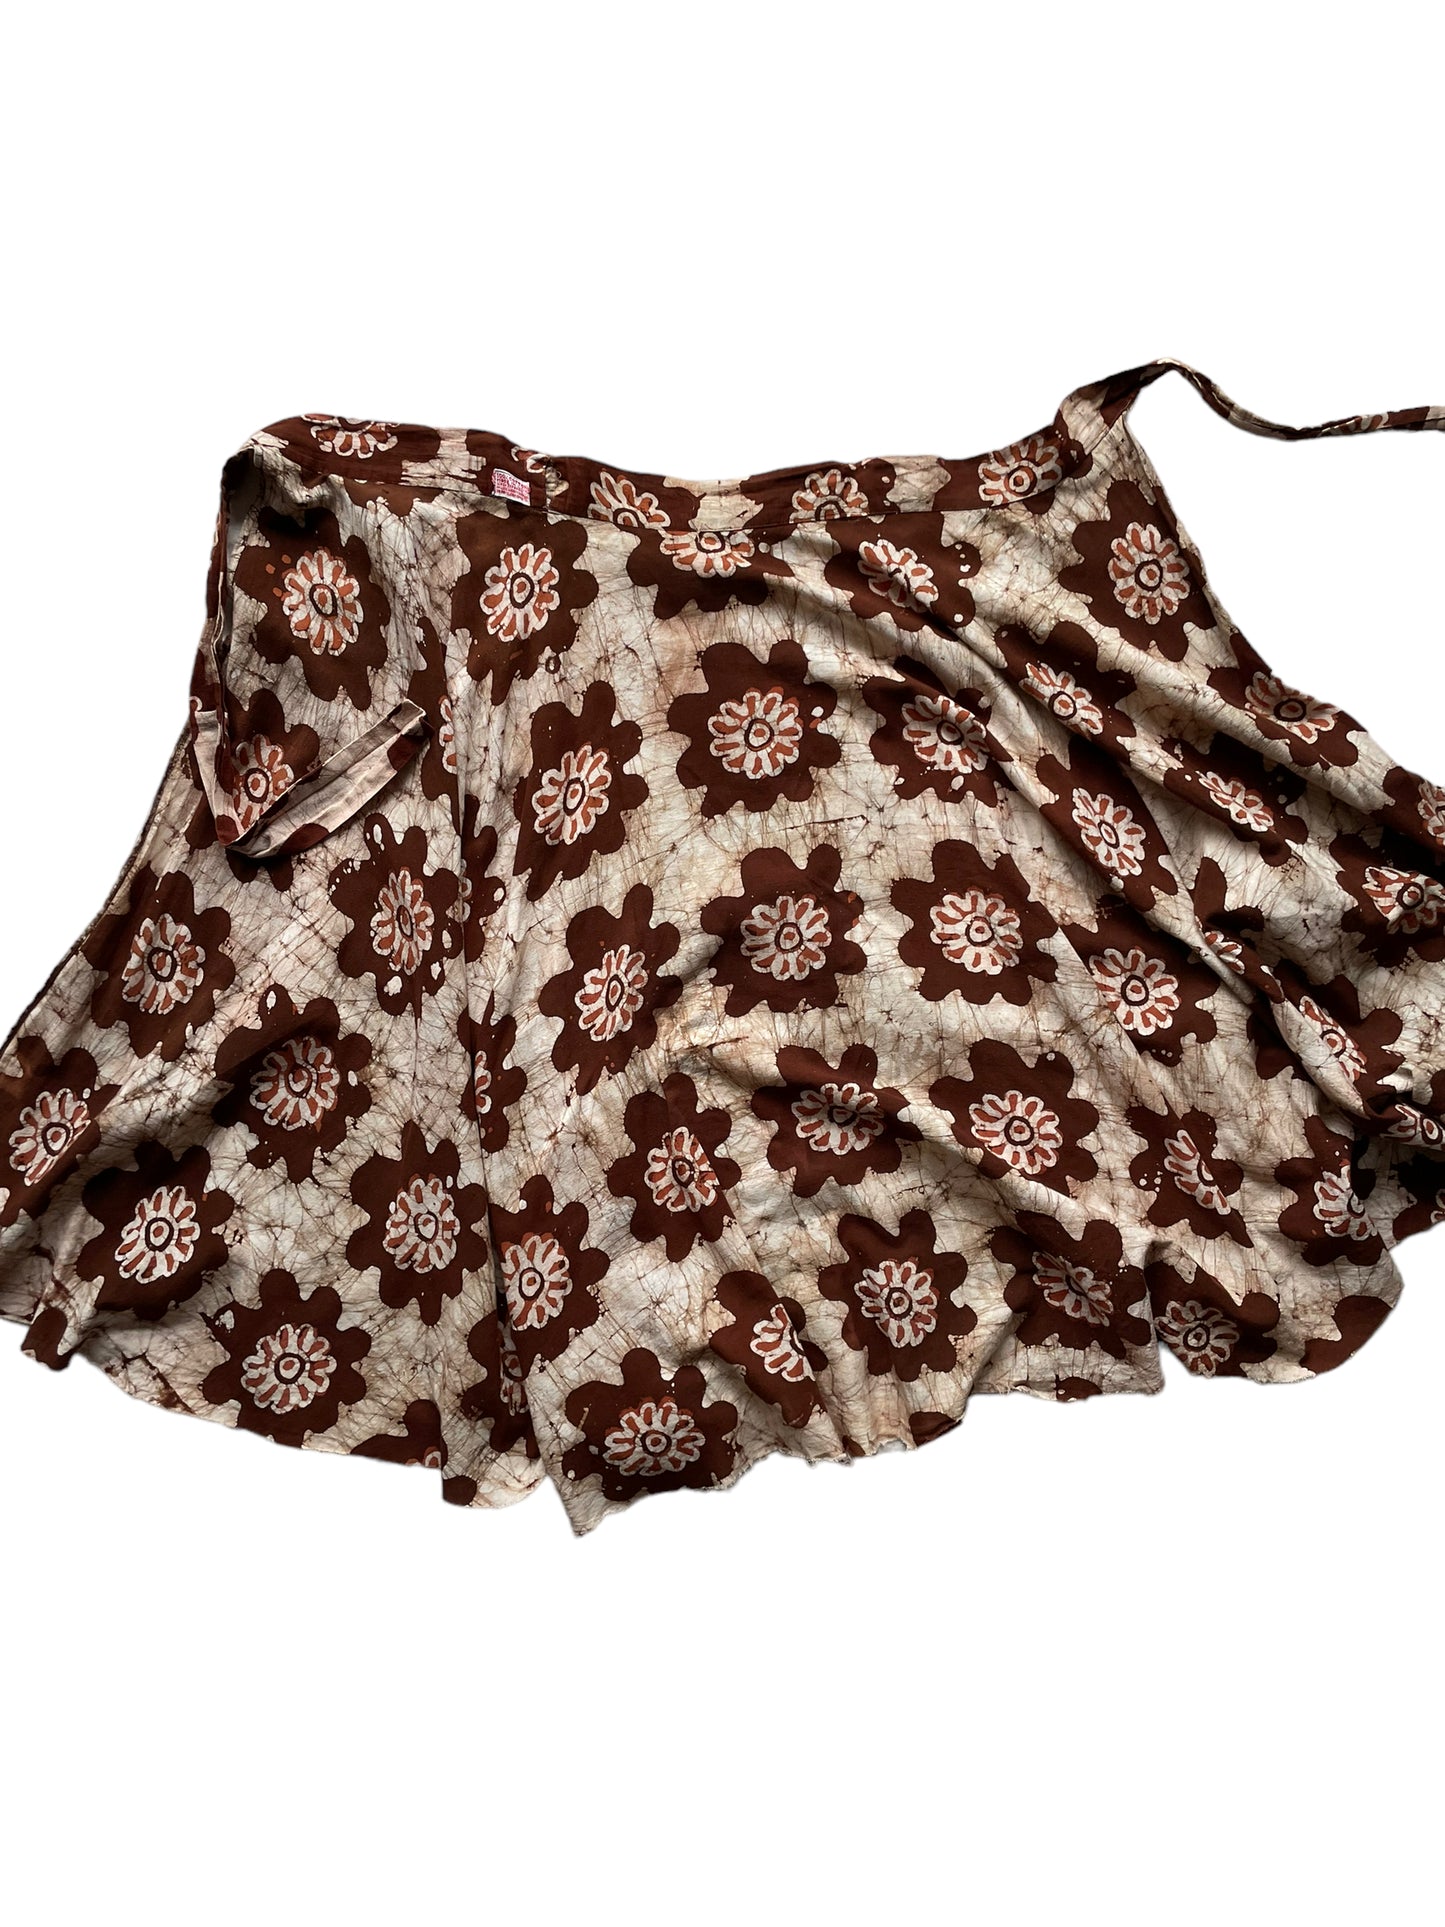 Open view of Vintage 1970s Indian Cotton Batik Wrap Skirt